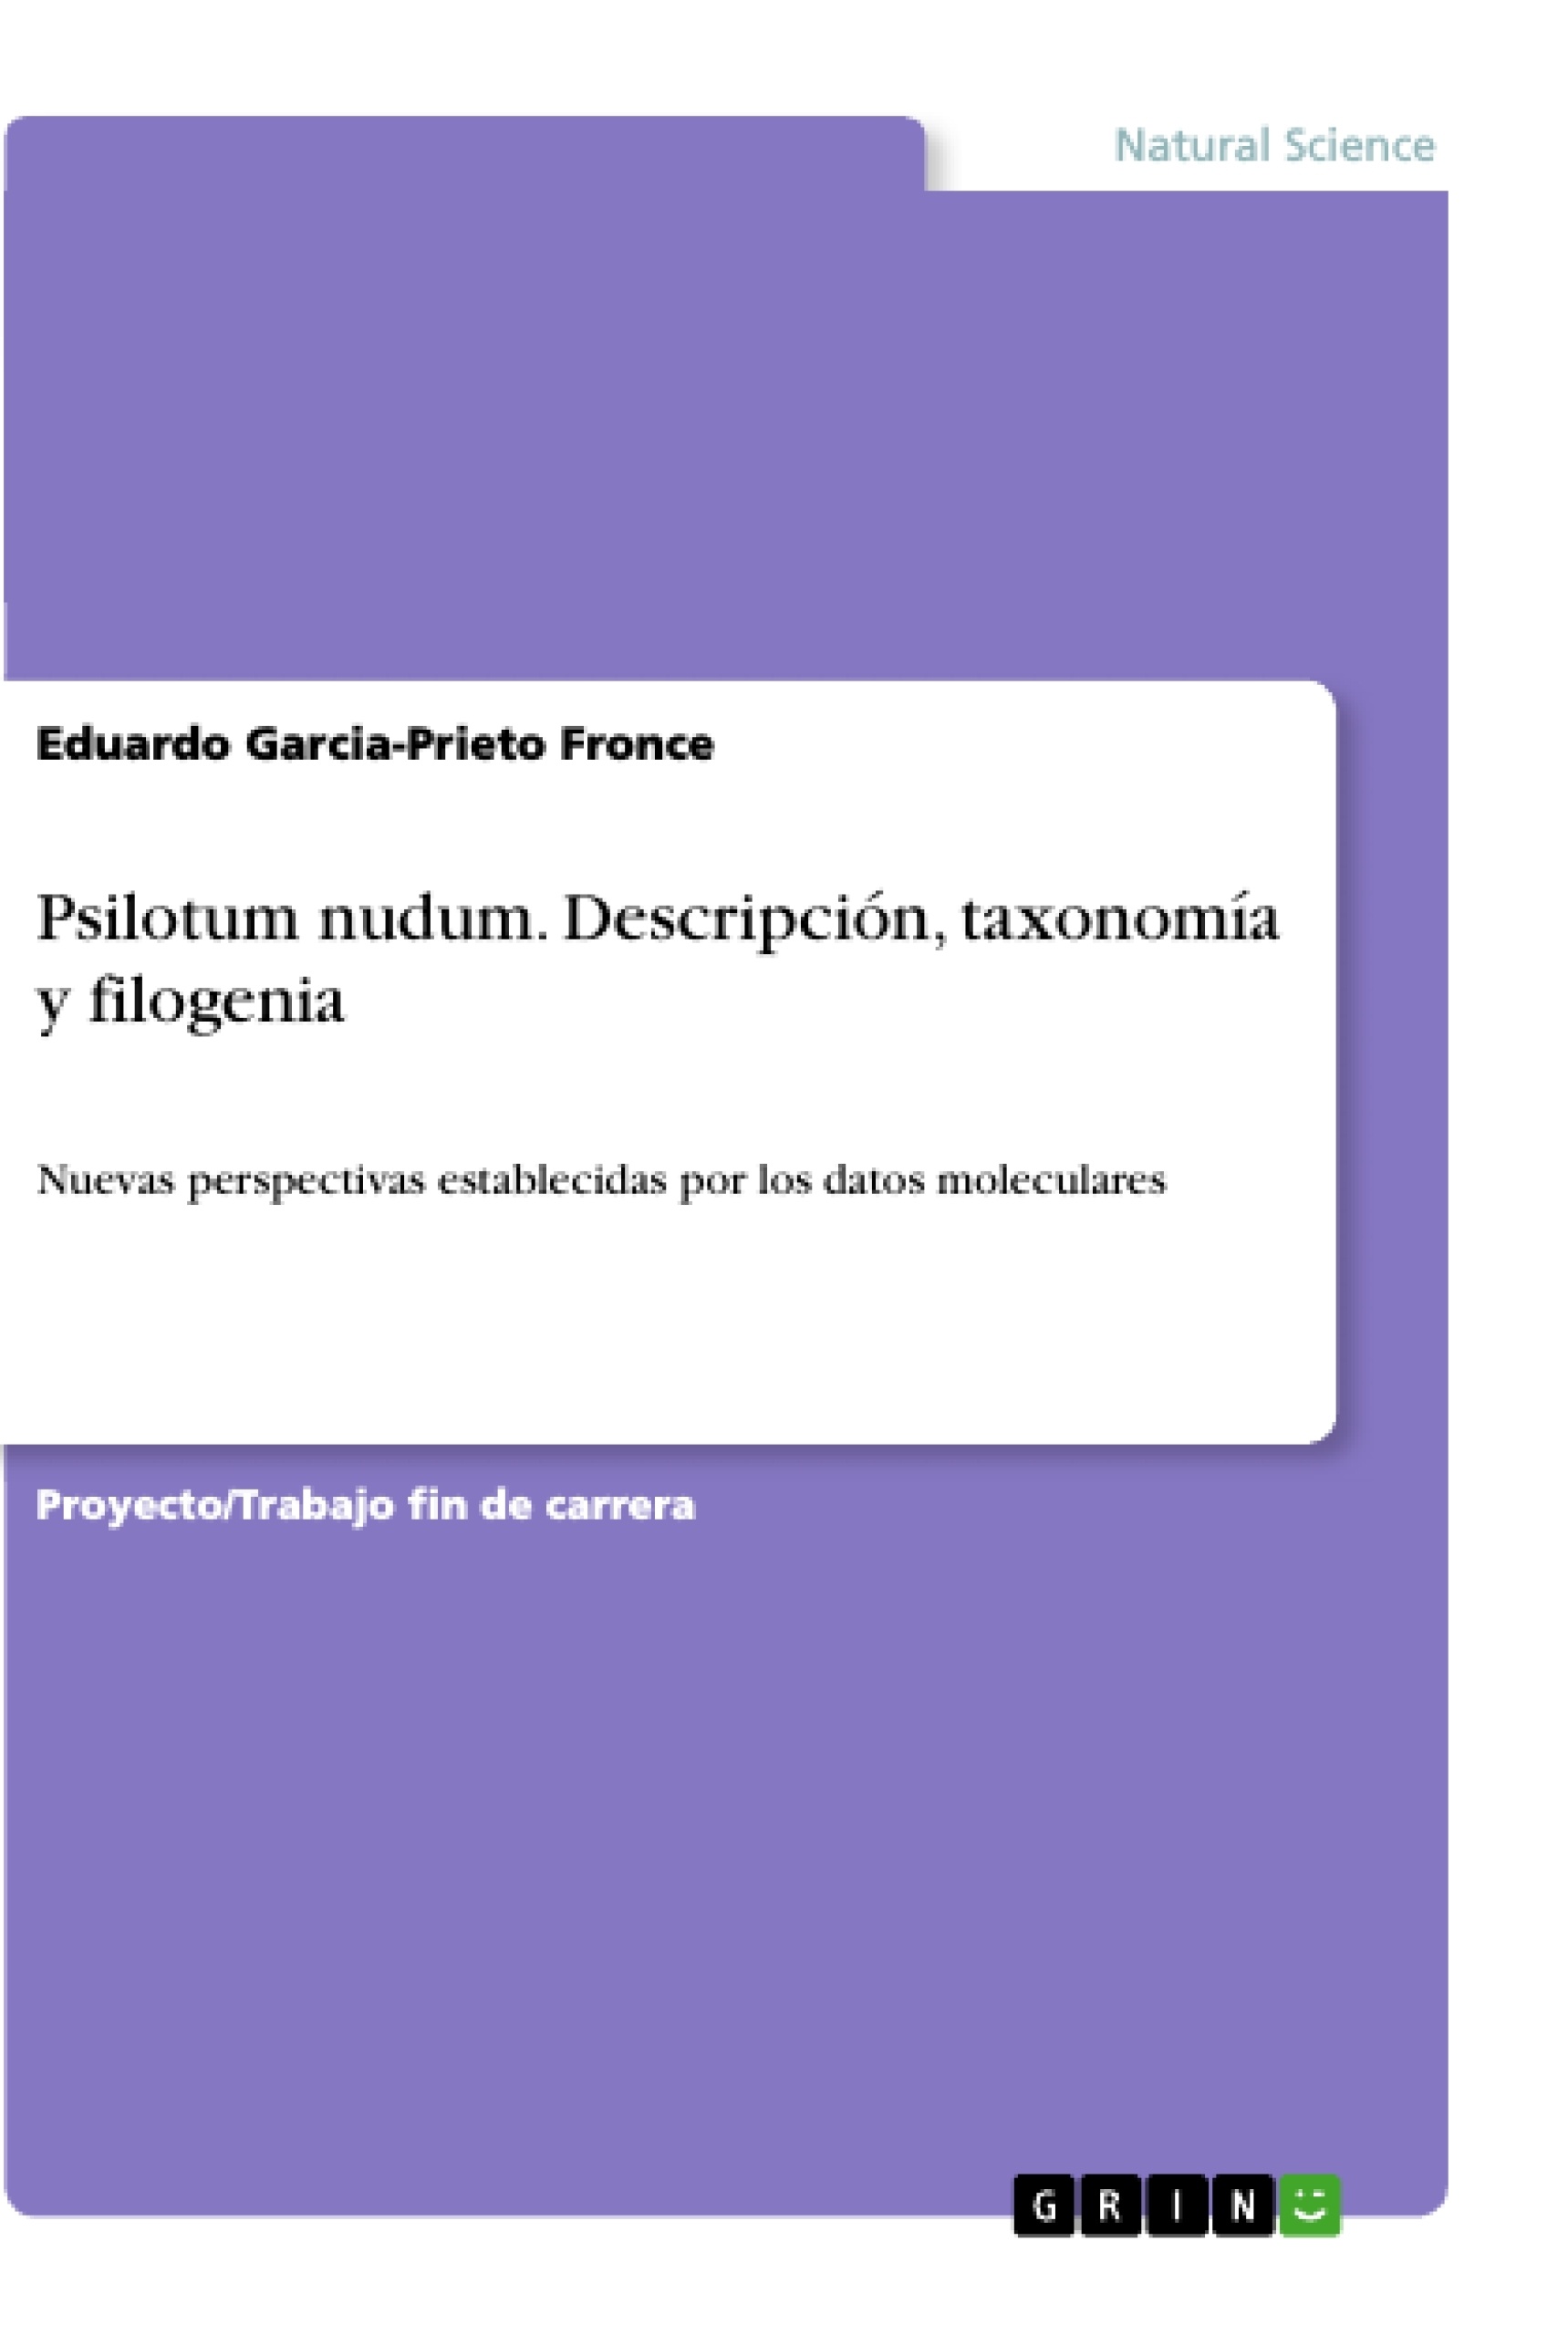 Título: Psilotum nudum. Descripción, taxonomía y filogenia